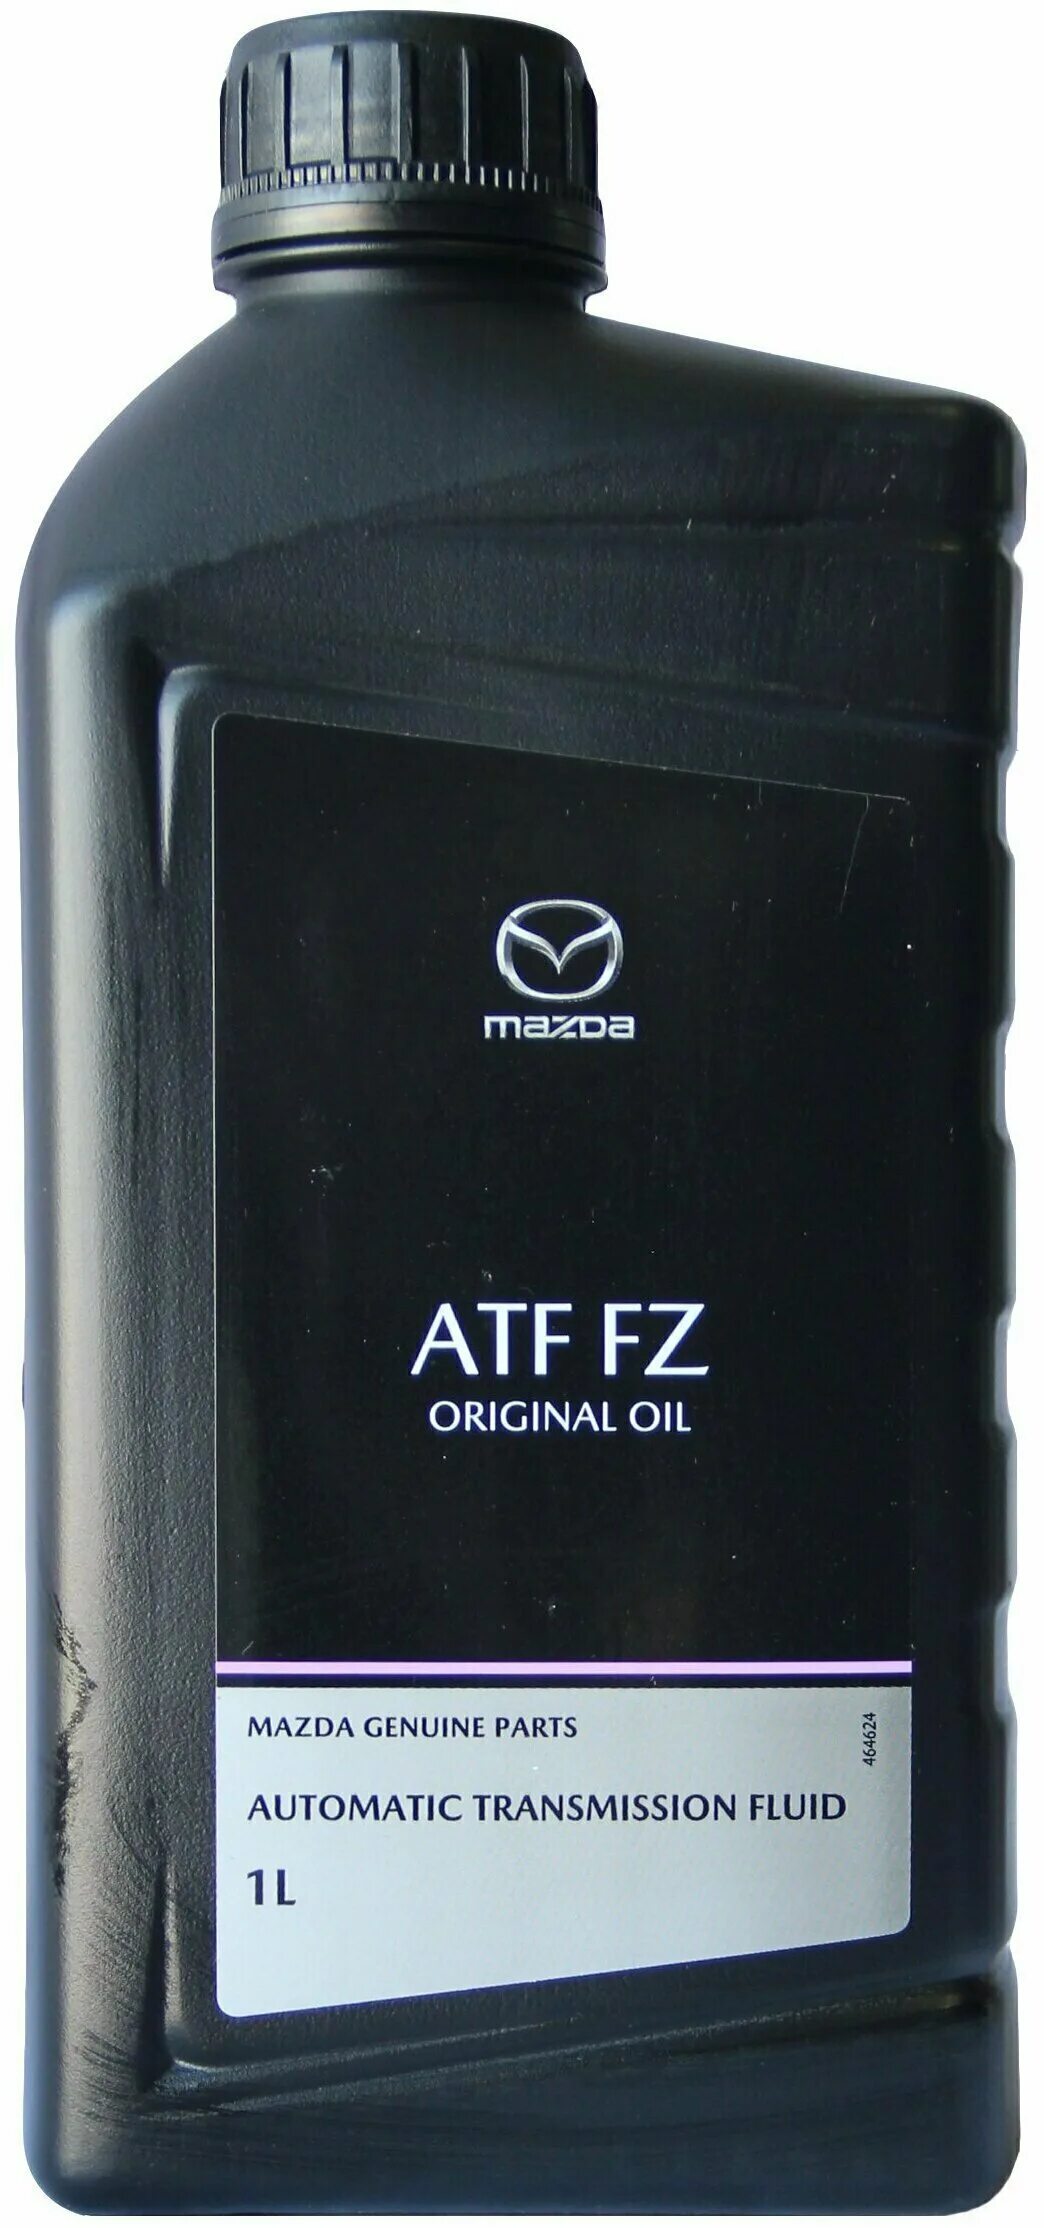 Atf ma1. Mazda Original Oil ATF FZ. Mazda Original Oil ATF FZ 1л. ATF FZ Mazda цвет масла. Mazda 8300771773.